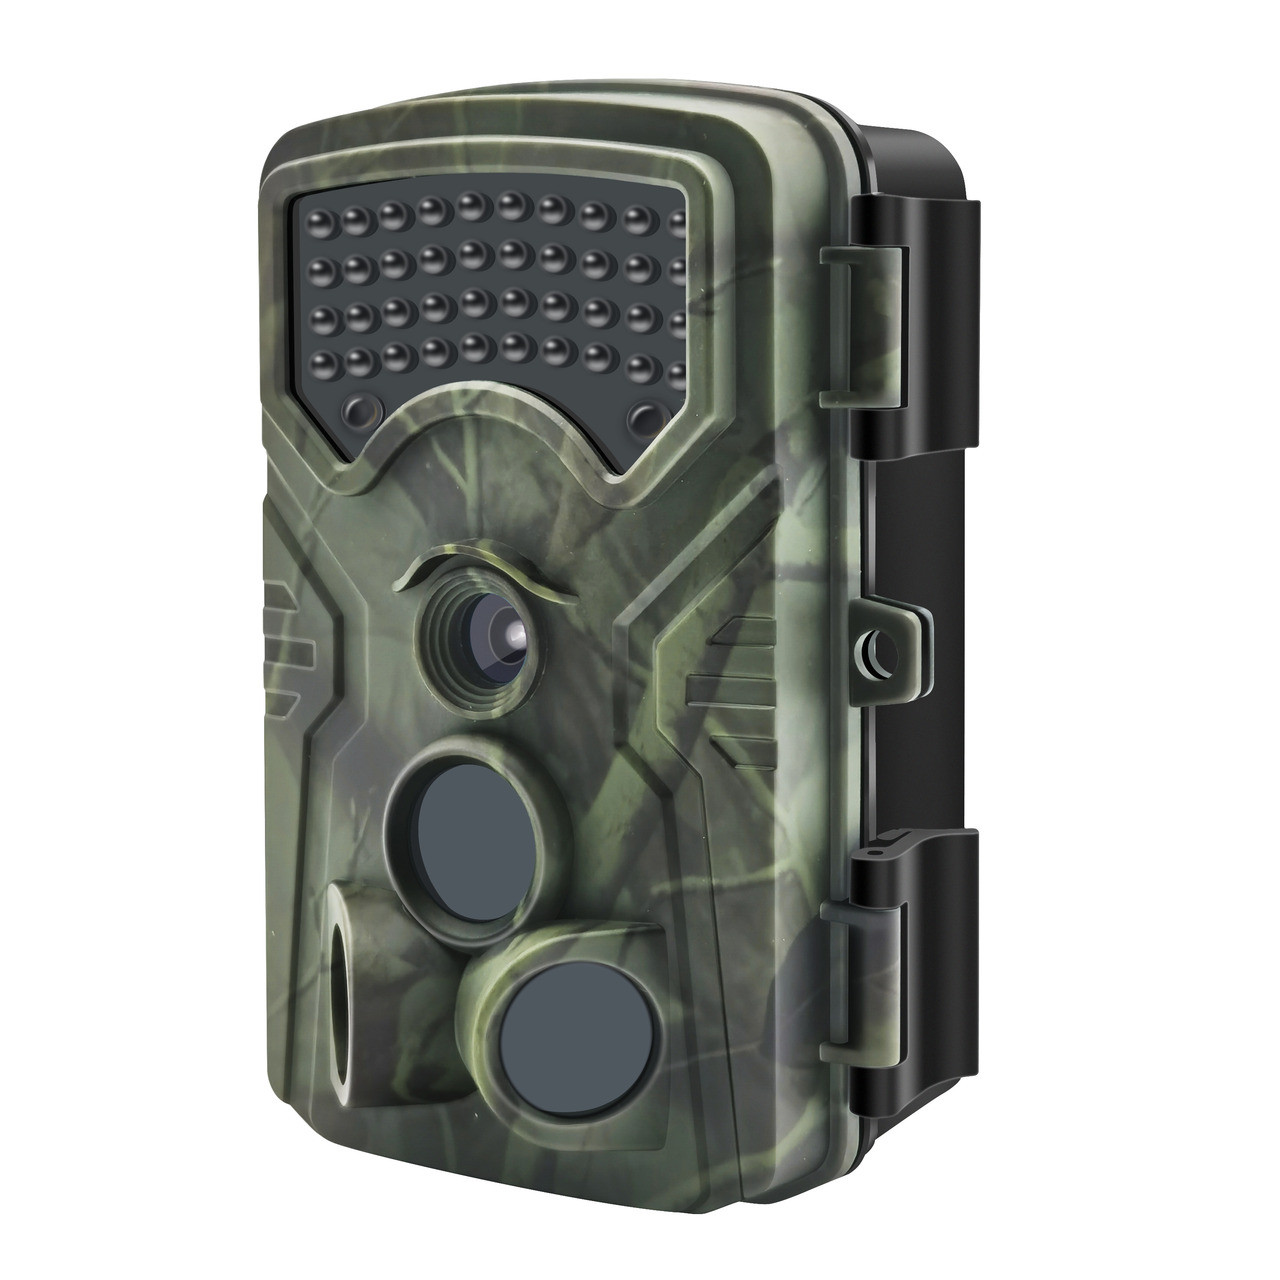 Braun Fotofalle- Wildkamera Scouting Cam BLACK1300 WiFi- 13-MP-CMOS- 4K- IP66- App-Steuerung unter Sicherheitstechnik